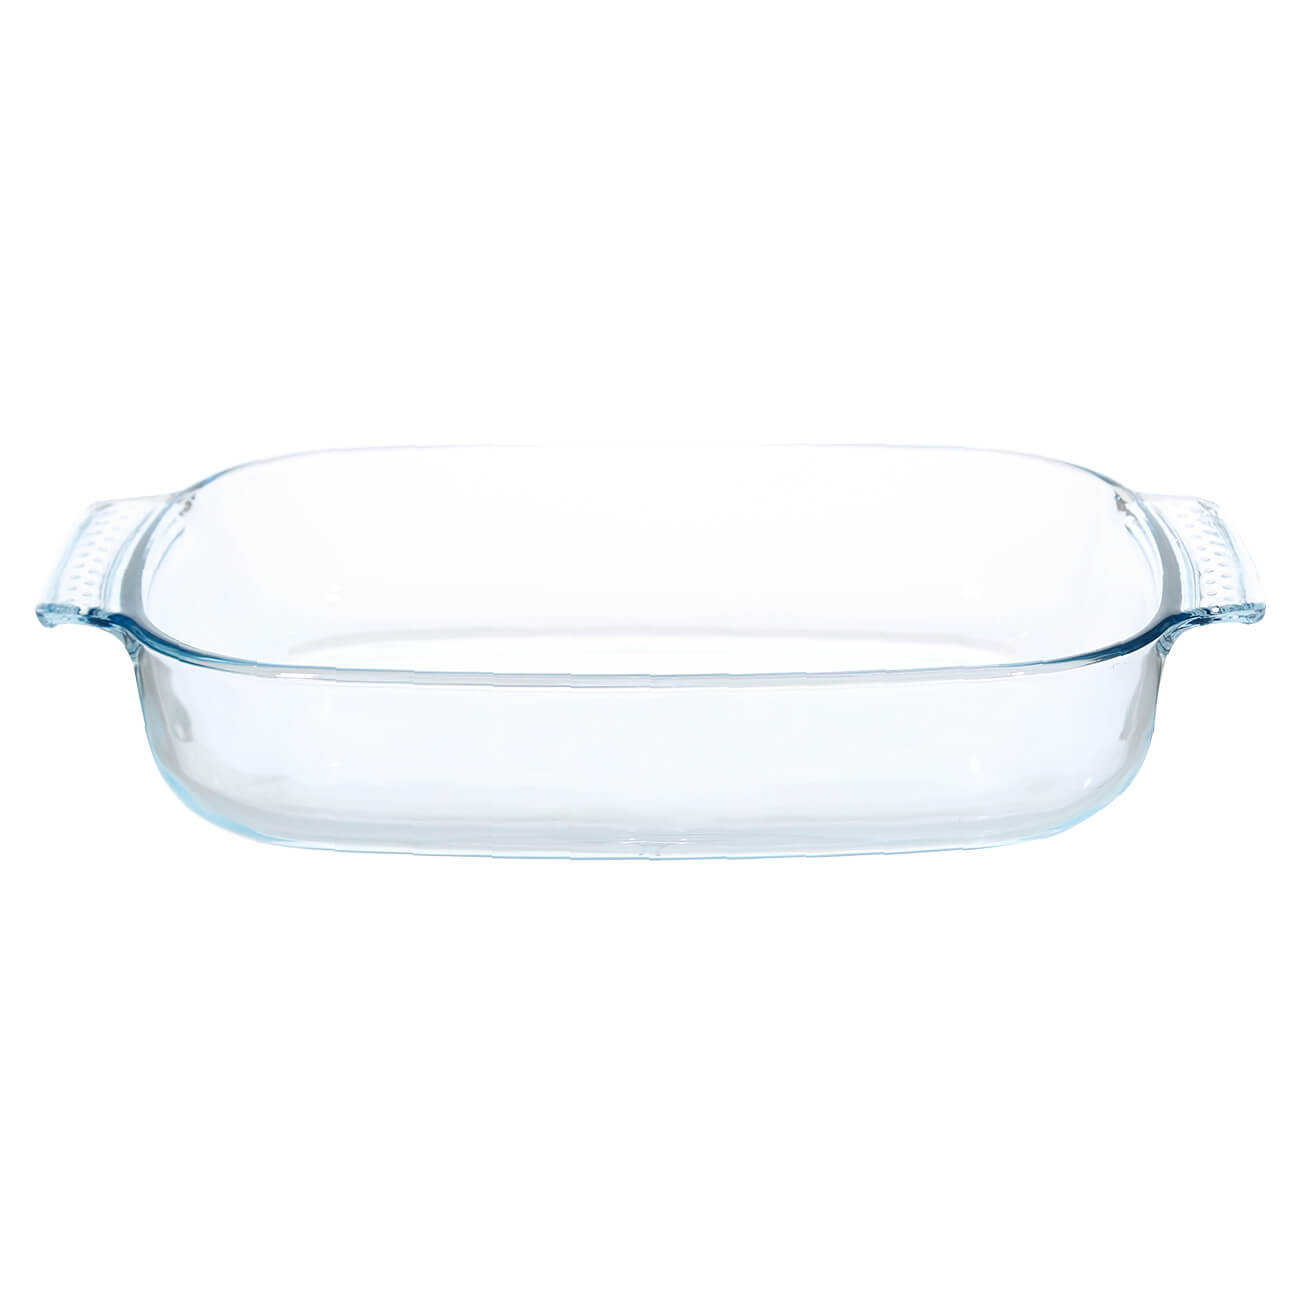 Форма для запекания, 34х22 см, стекло Т, прямоугольная, Cook тарелка суповая стекло 20 см круглая lillie luminarc q8716 белая